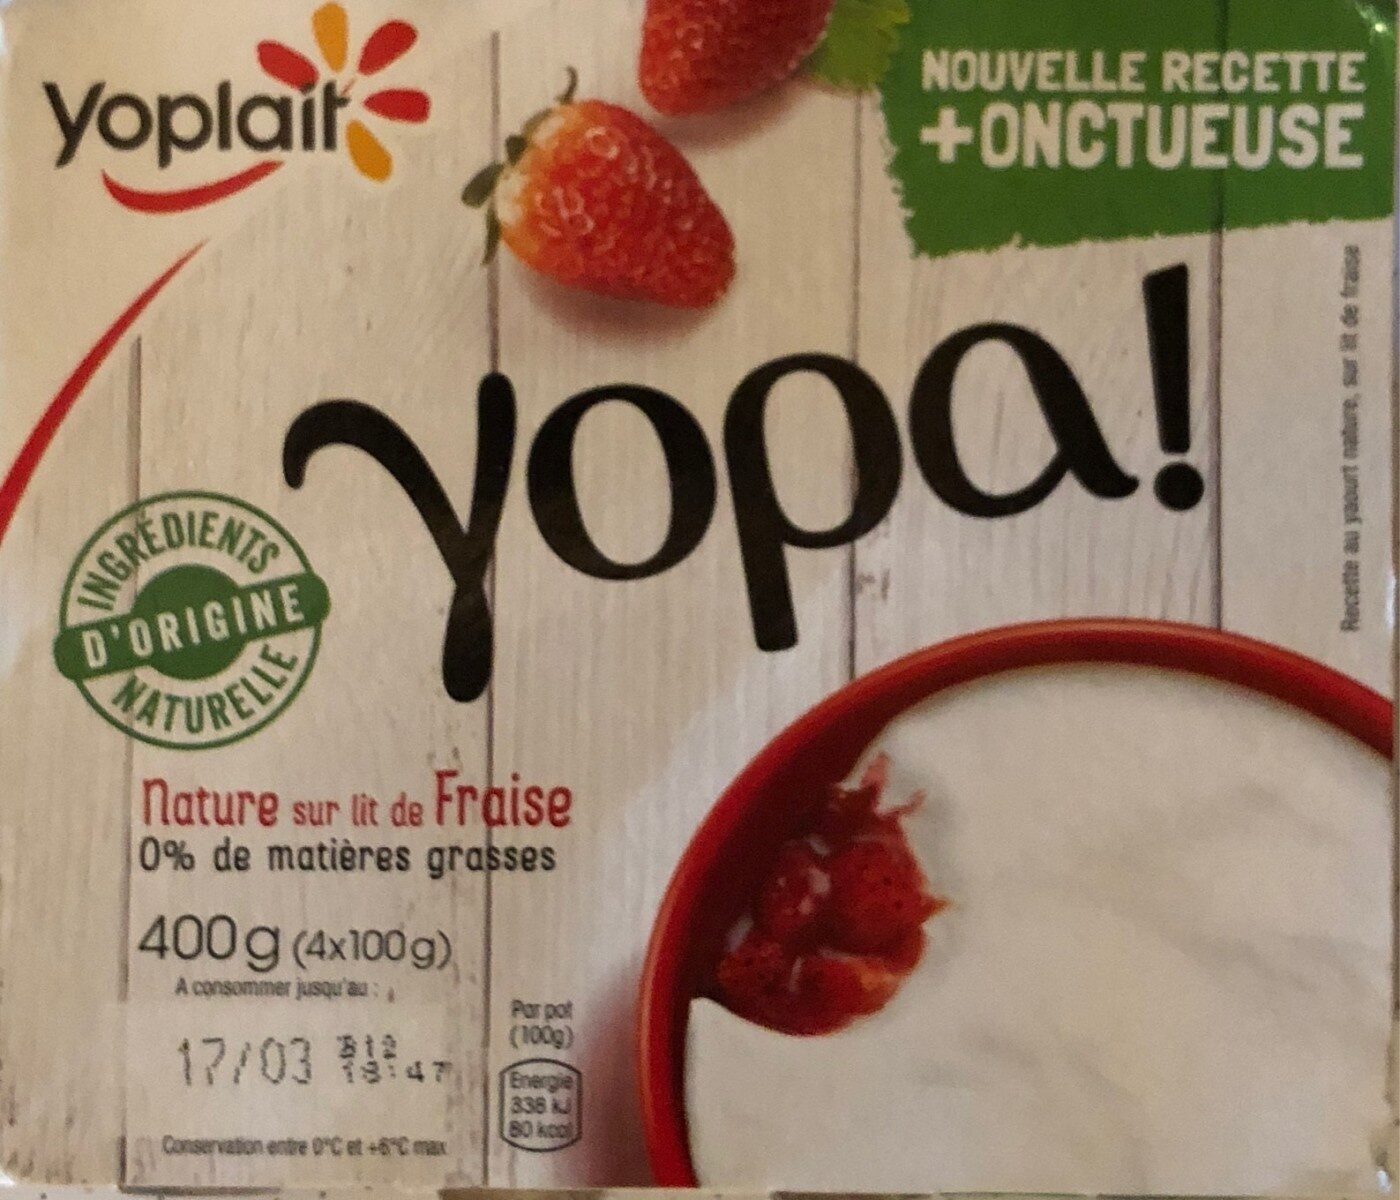 Recette au yaourt nature, sur lit de fraise - Product - fr